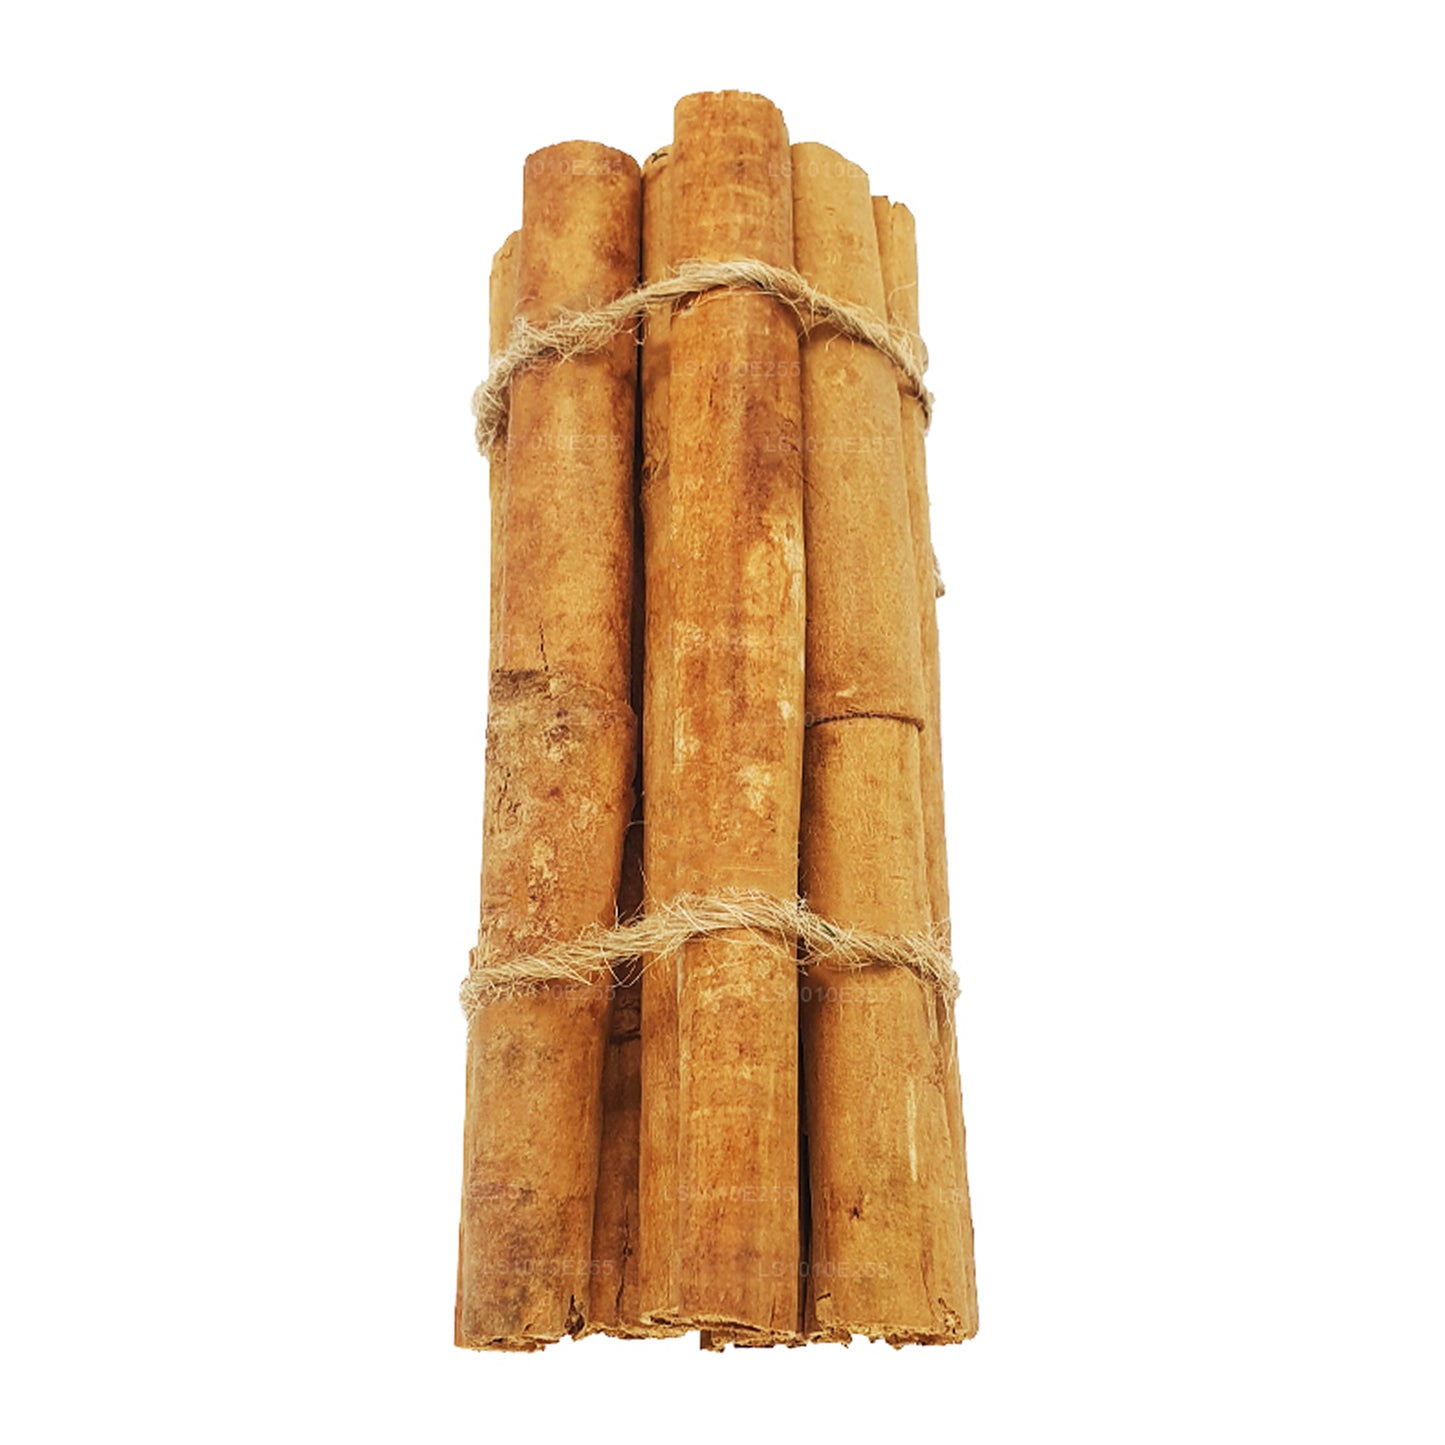 Lakpura ”M5 Special” Grade Ceylon True Cinnamon Barks Pack